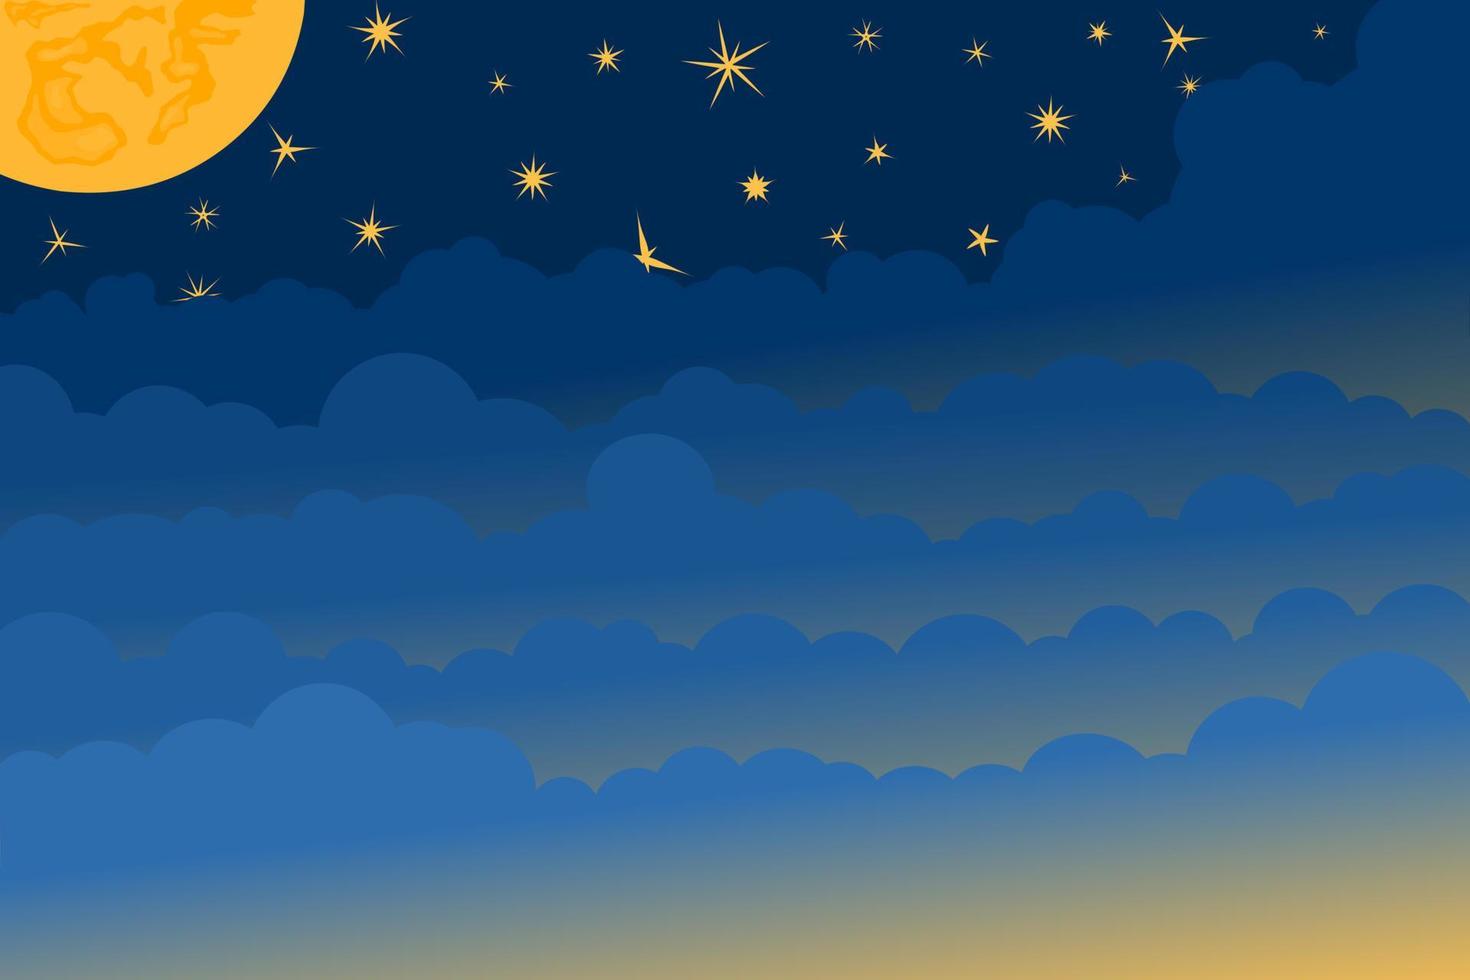 halv måne, stjärnor och moln på de mörk natt himmel bakgrund. papper konst. natt scen bakgrund. vektor illustration.